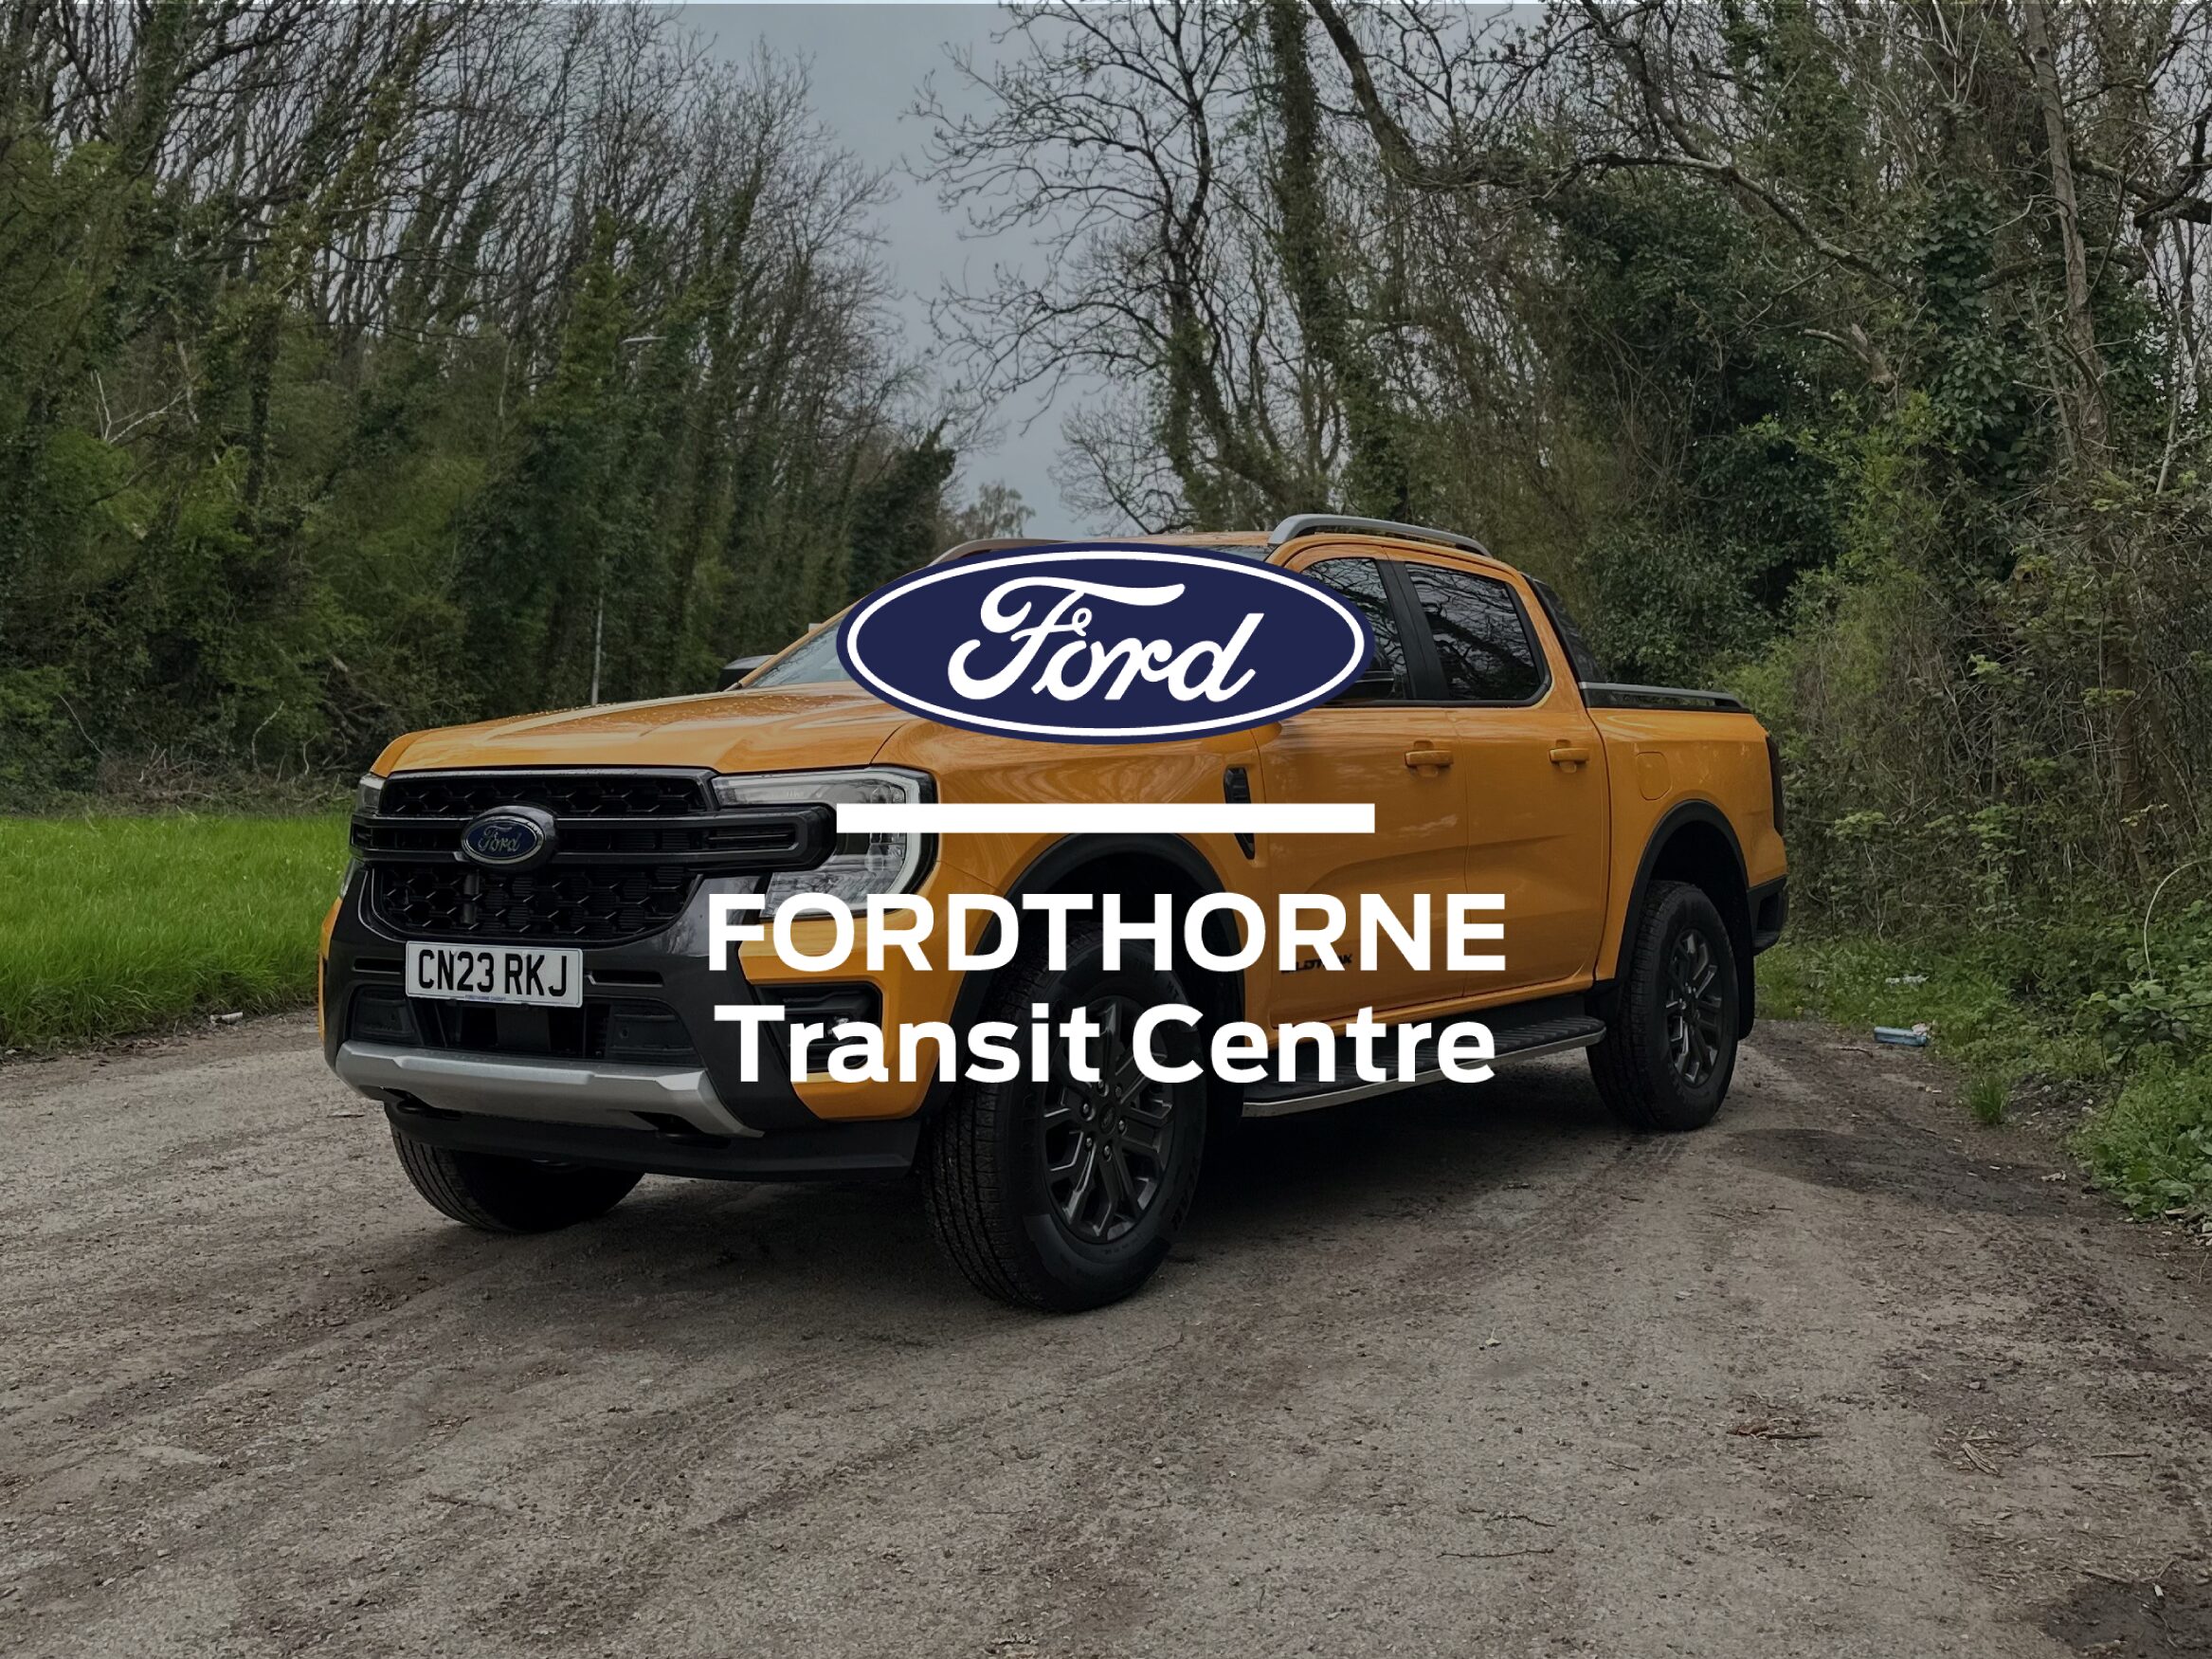 Fordthorne Transit Centre